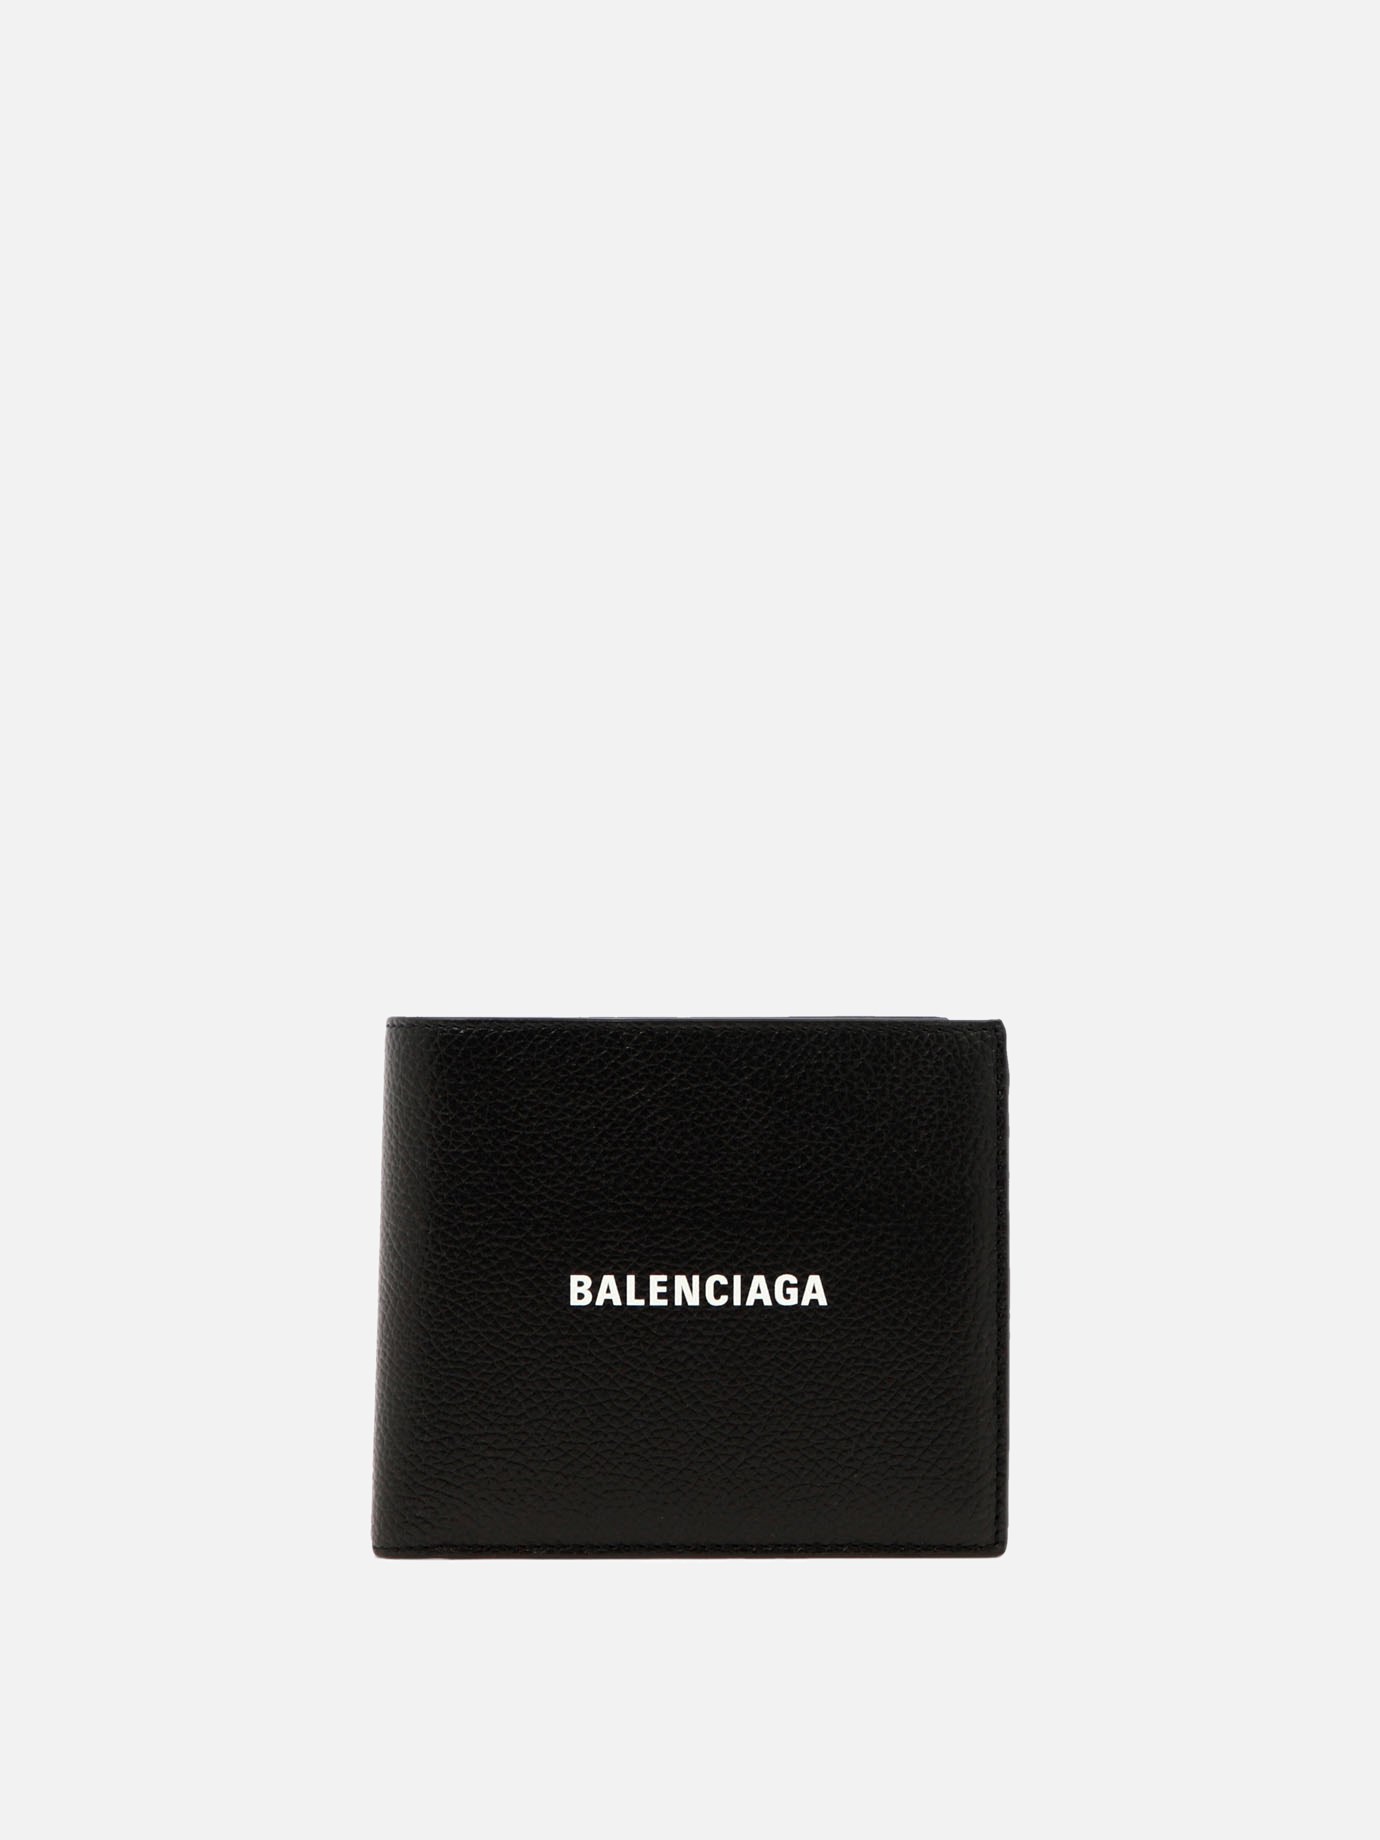  Cash Square Folded Coin  walletby Balenciaga - 4